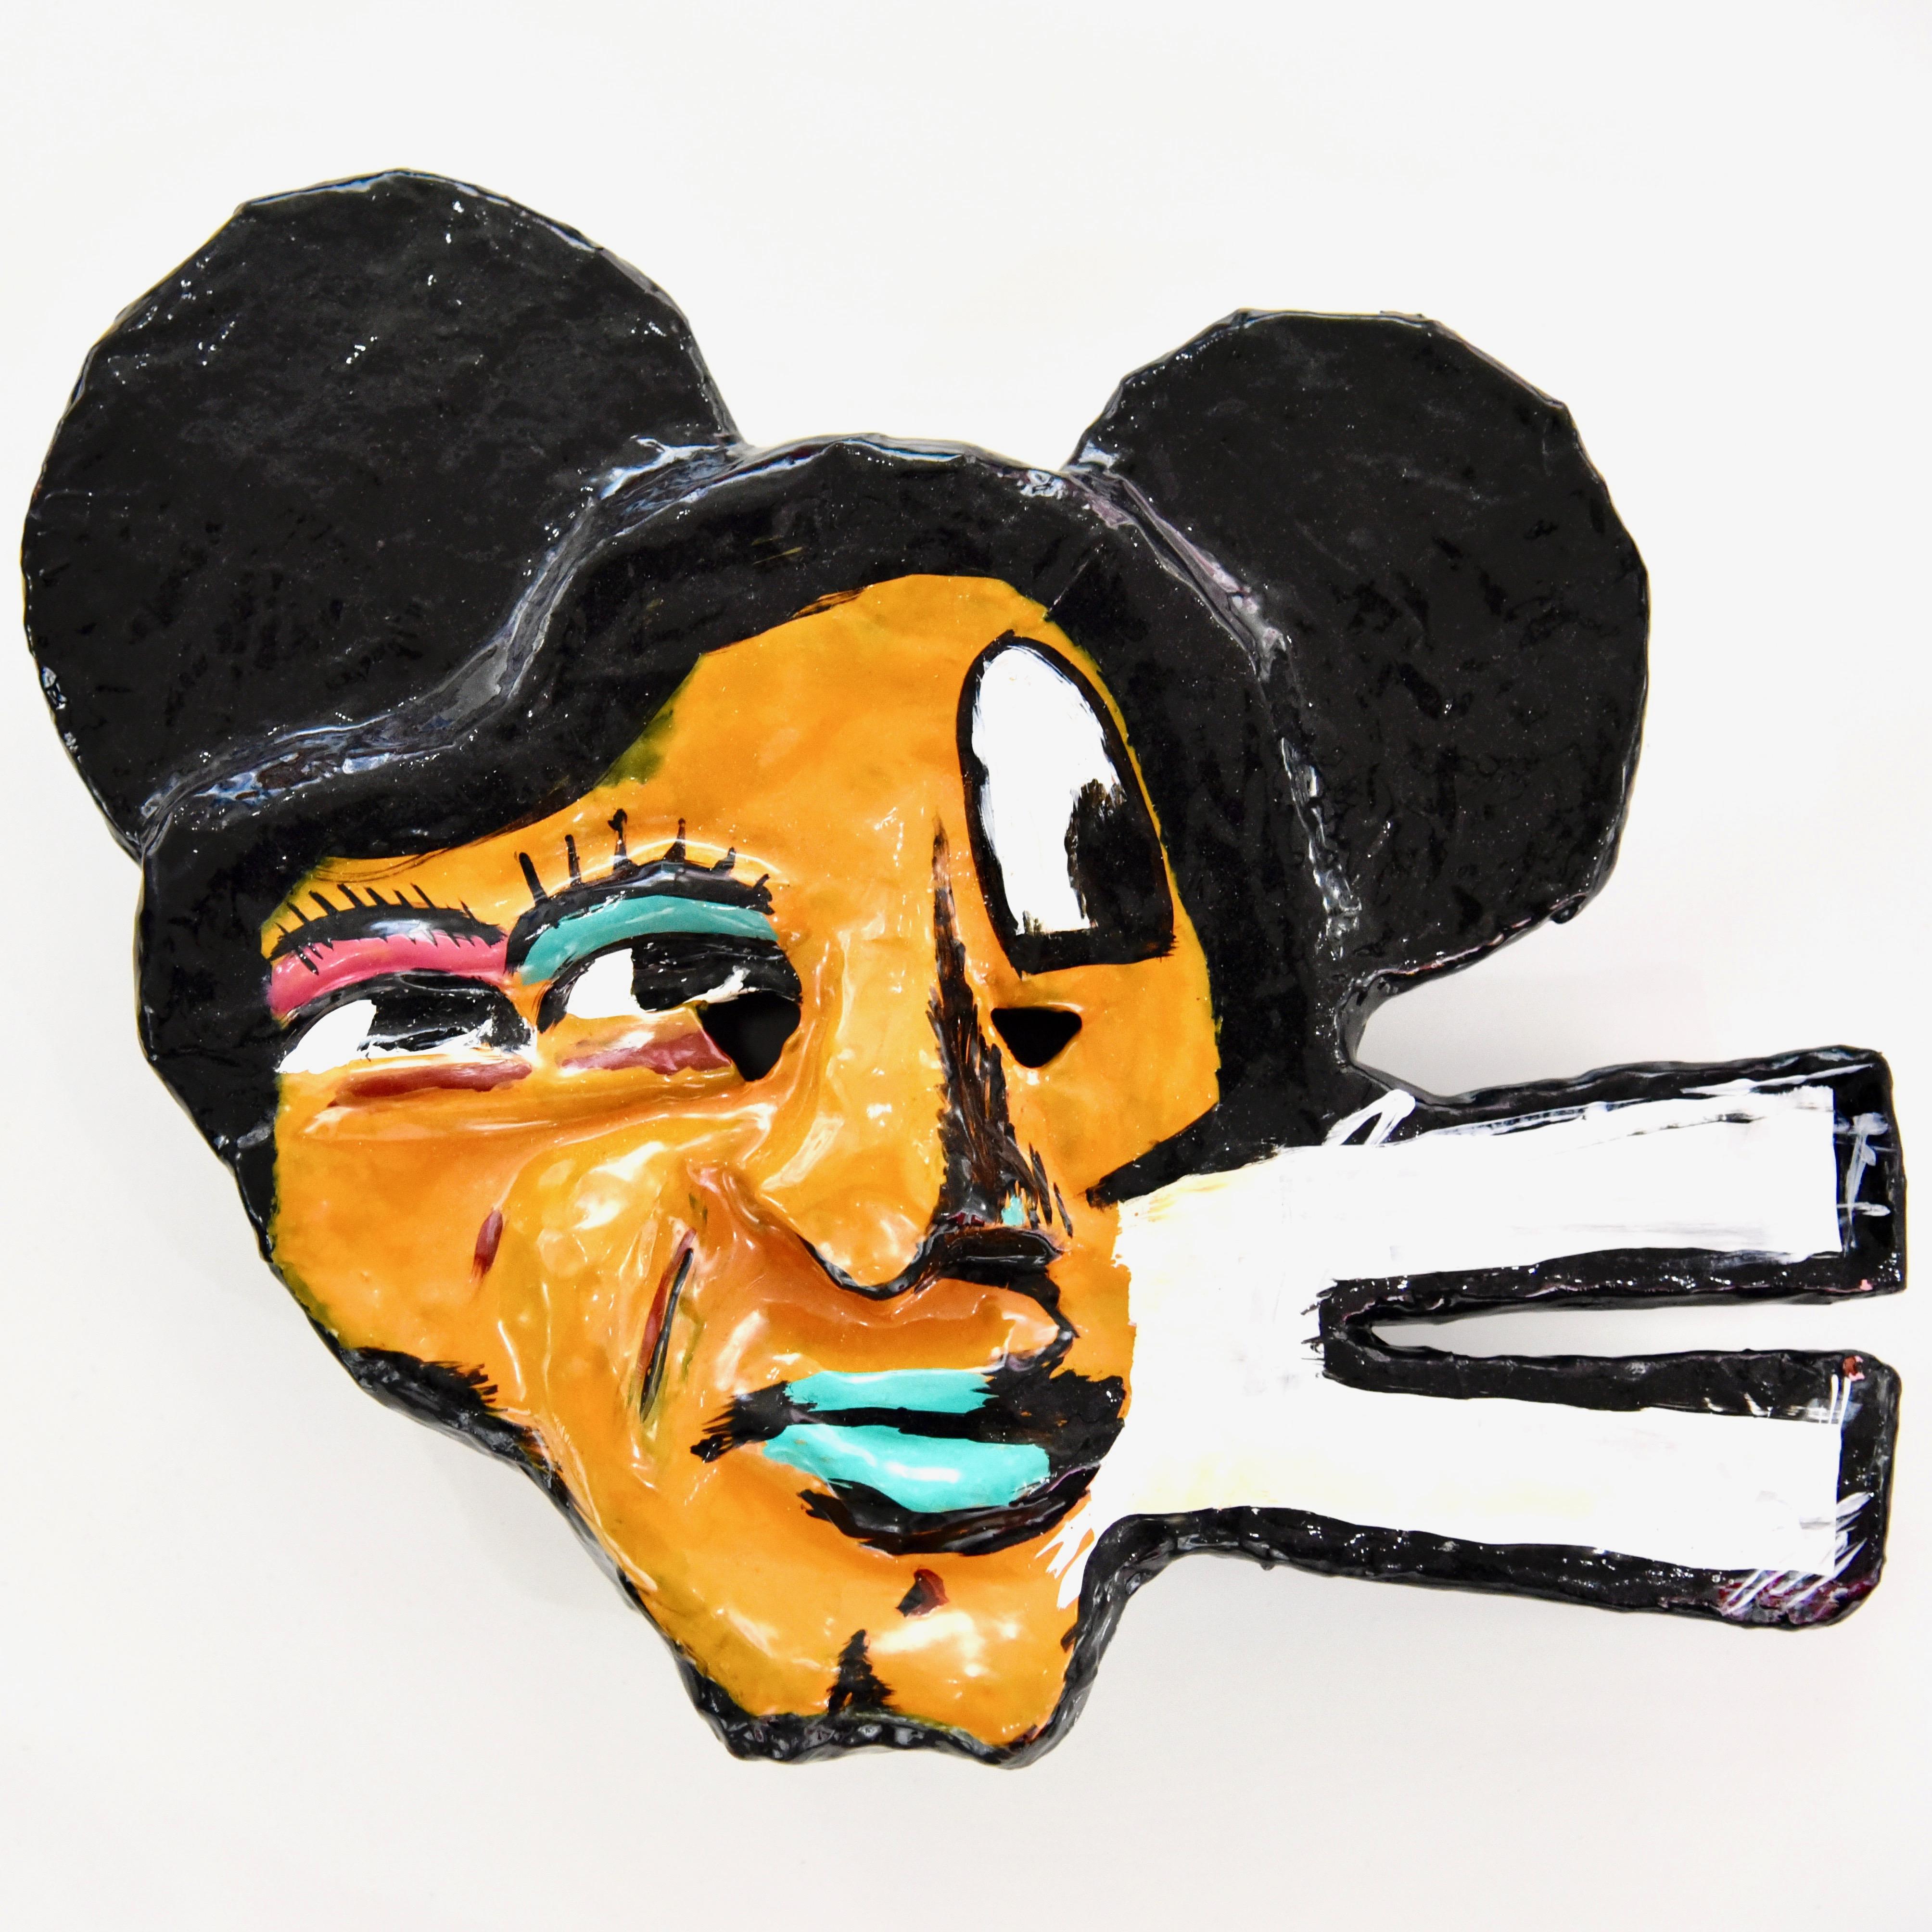 Einzigartige Sammlermaske von John Paul Fauves 
Acryl über Pappmaché

John Paul Fauves (geboren 1980) ist ein zeitgenössischer Künstler aus Costa Rica. Sein künstlerischer Weg begann bereits in jungen Jahren, als er Schüler von Joaquin Rodriguez del